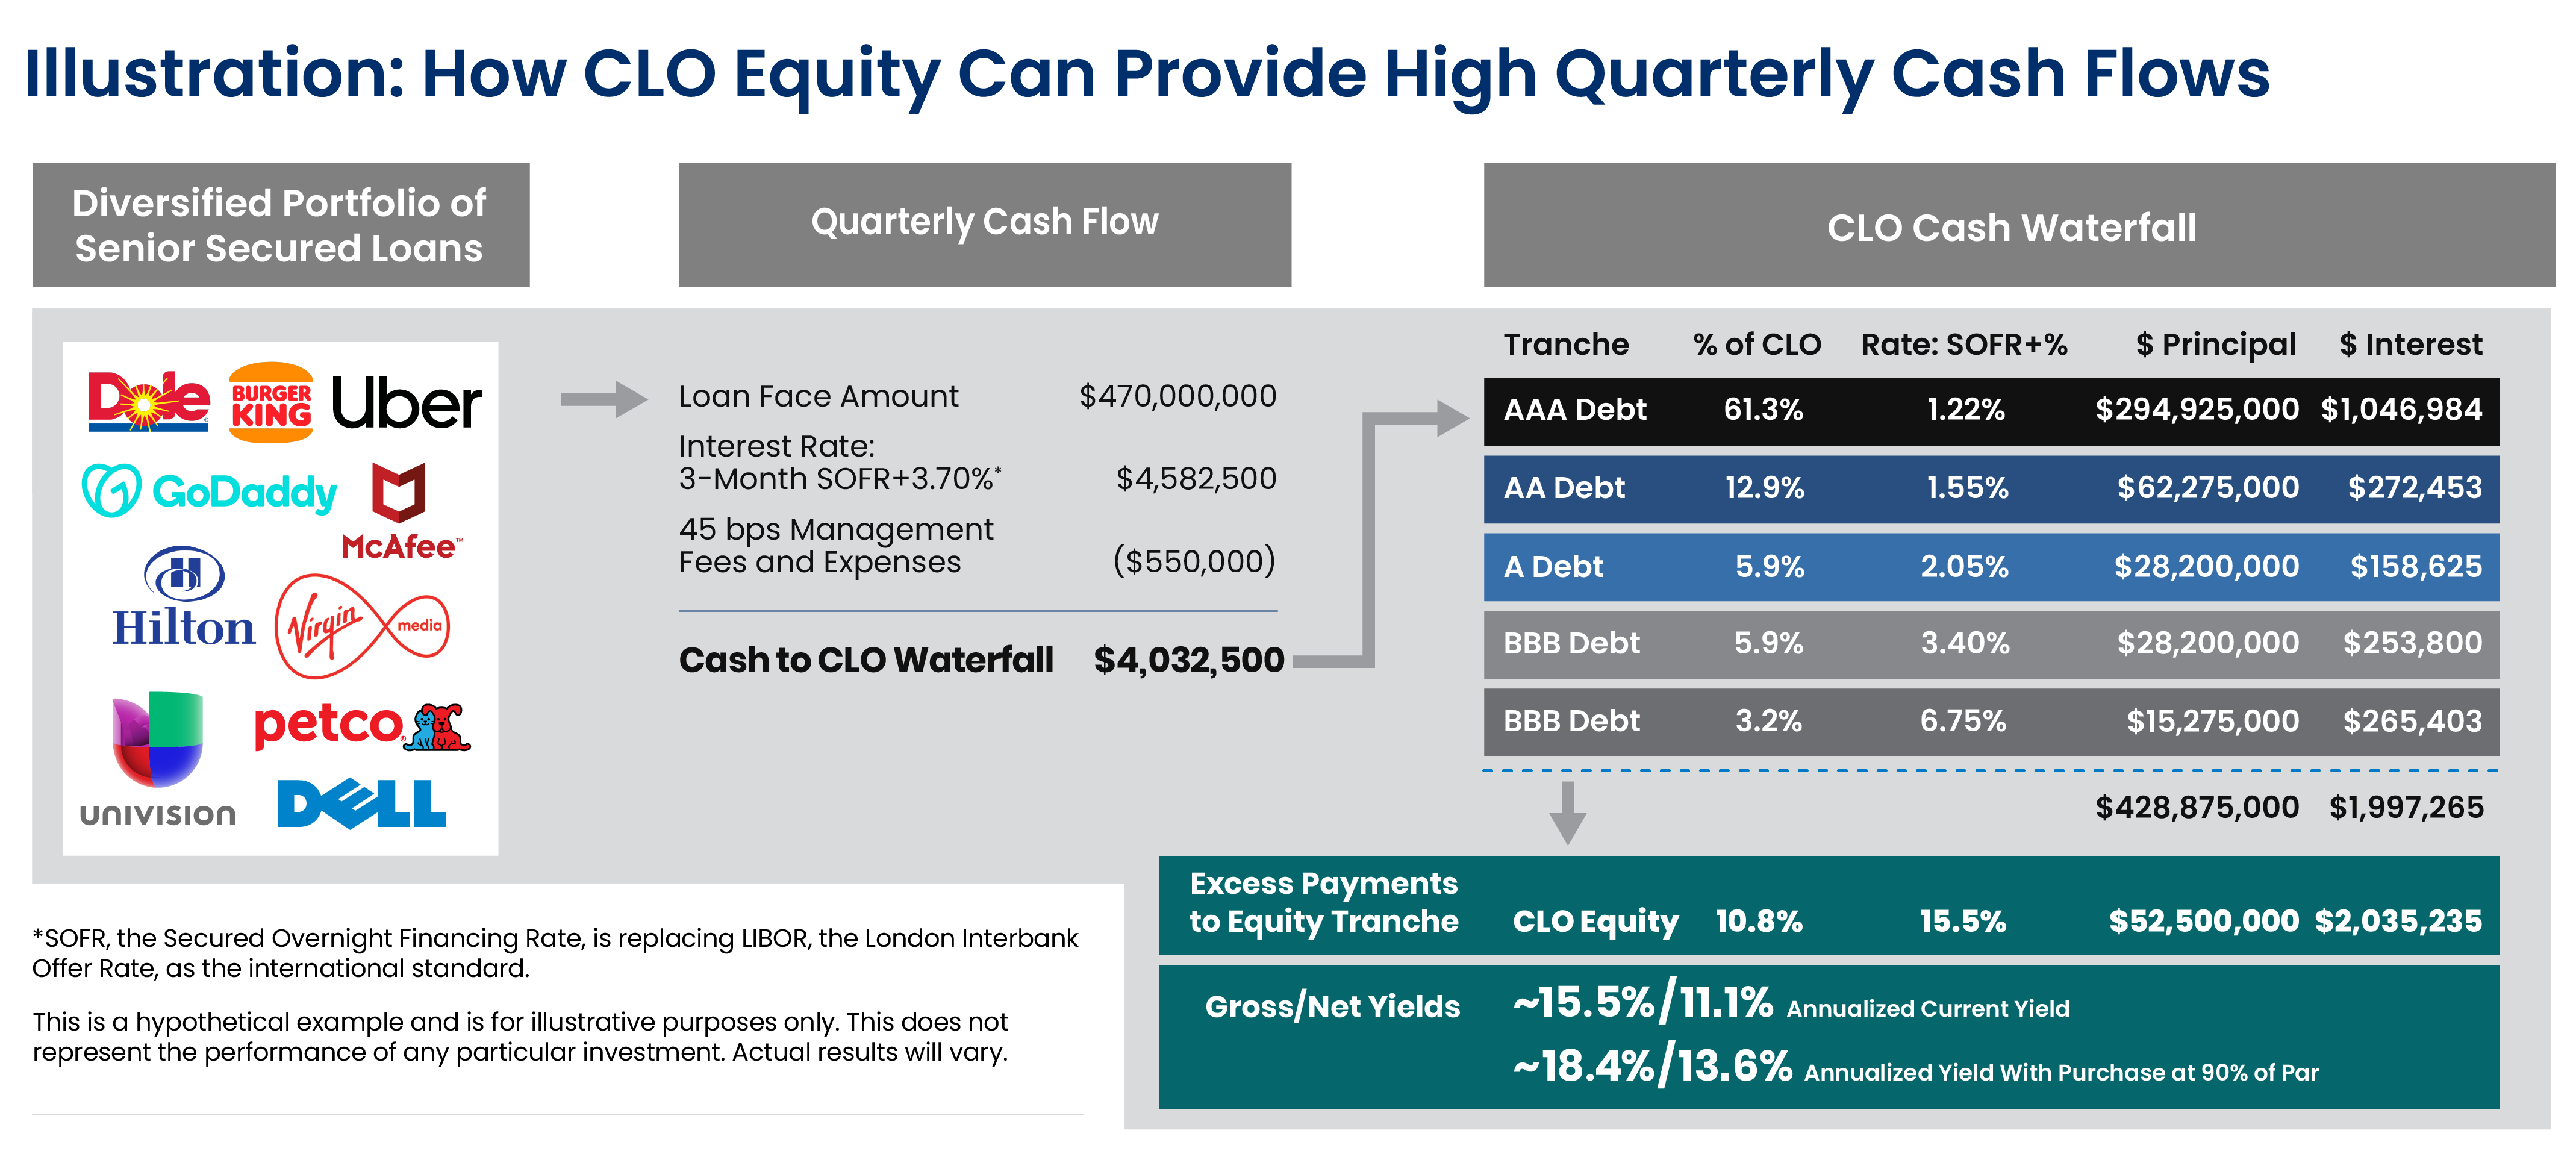 DRAFT - 31725 CP Blog CLO Equity Quarterly Cash Flow infographic